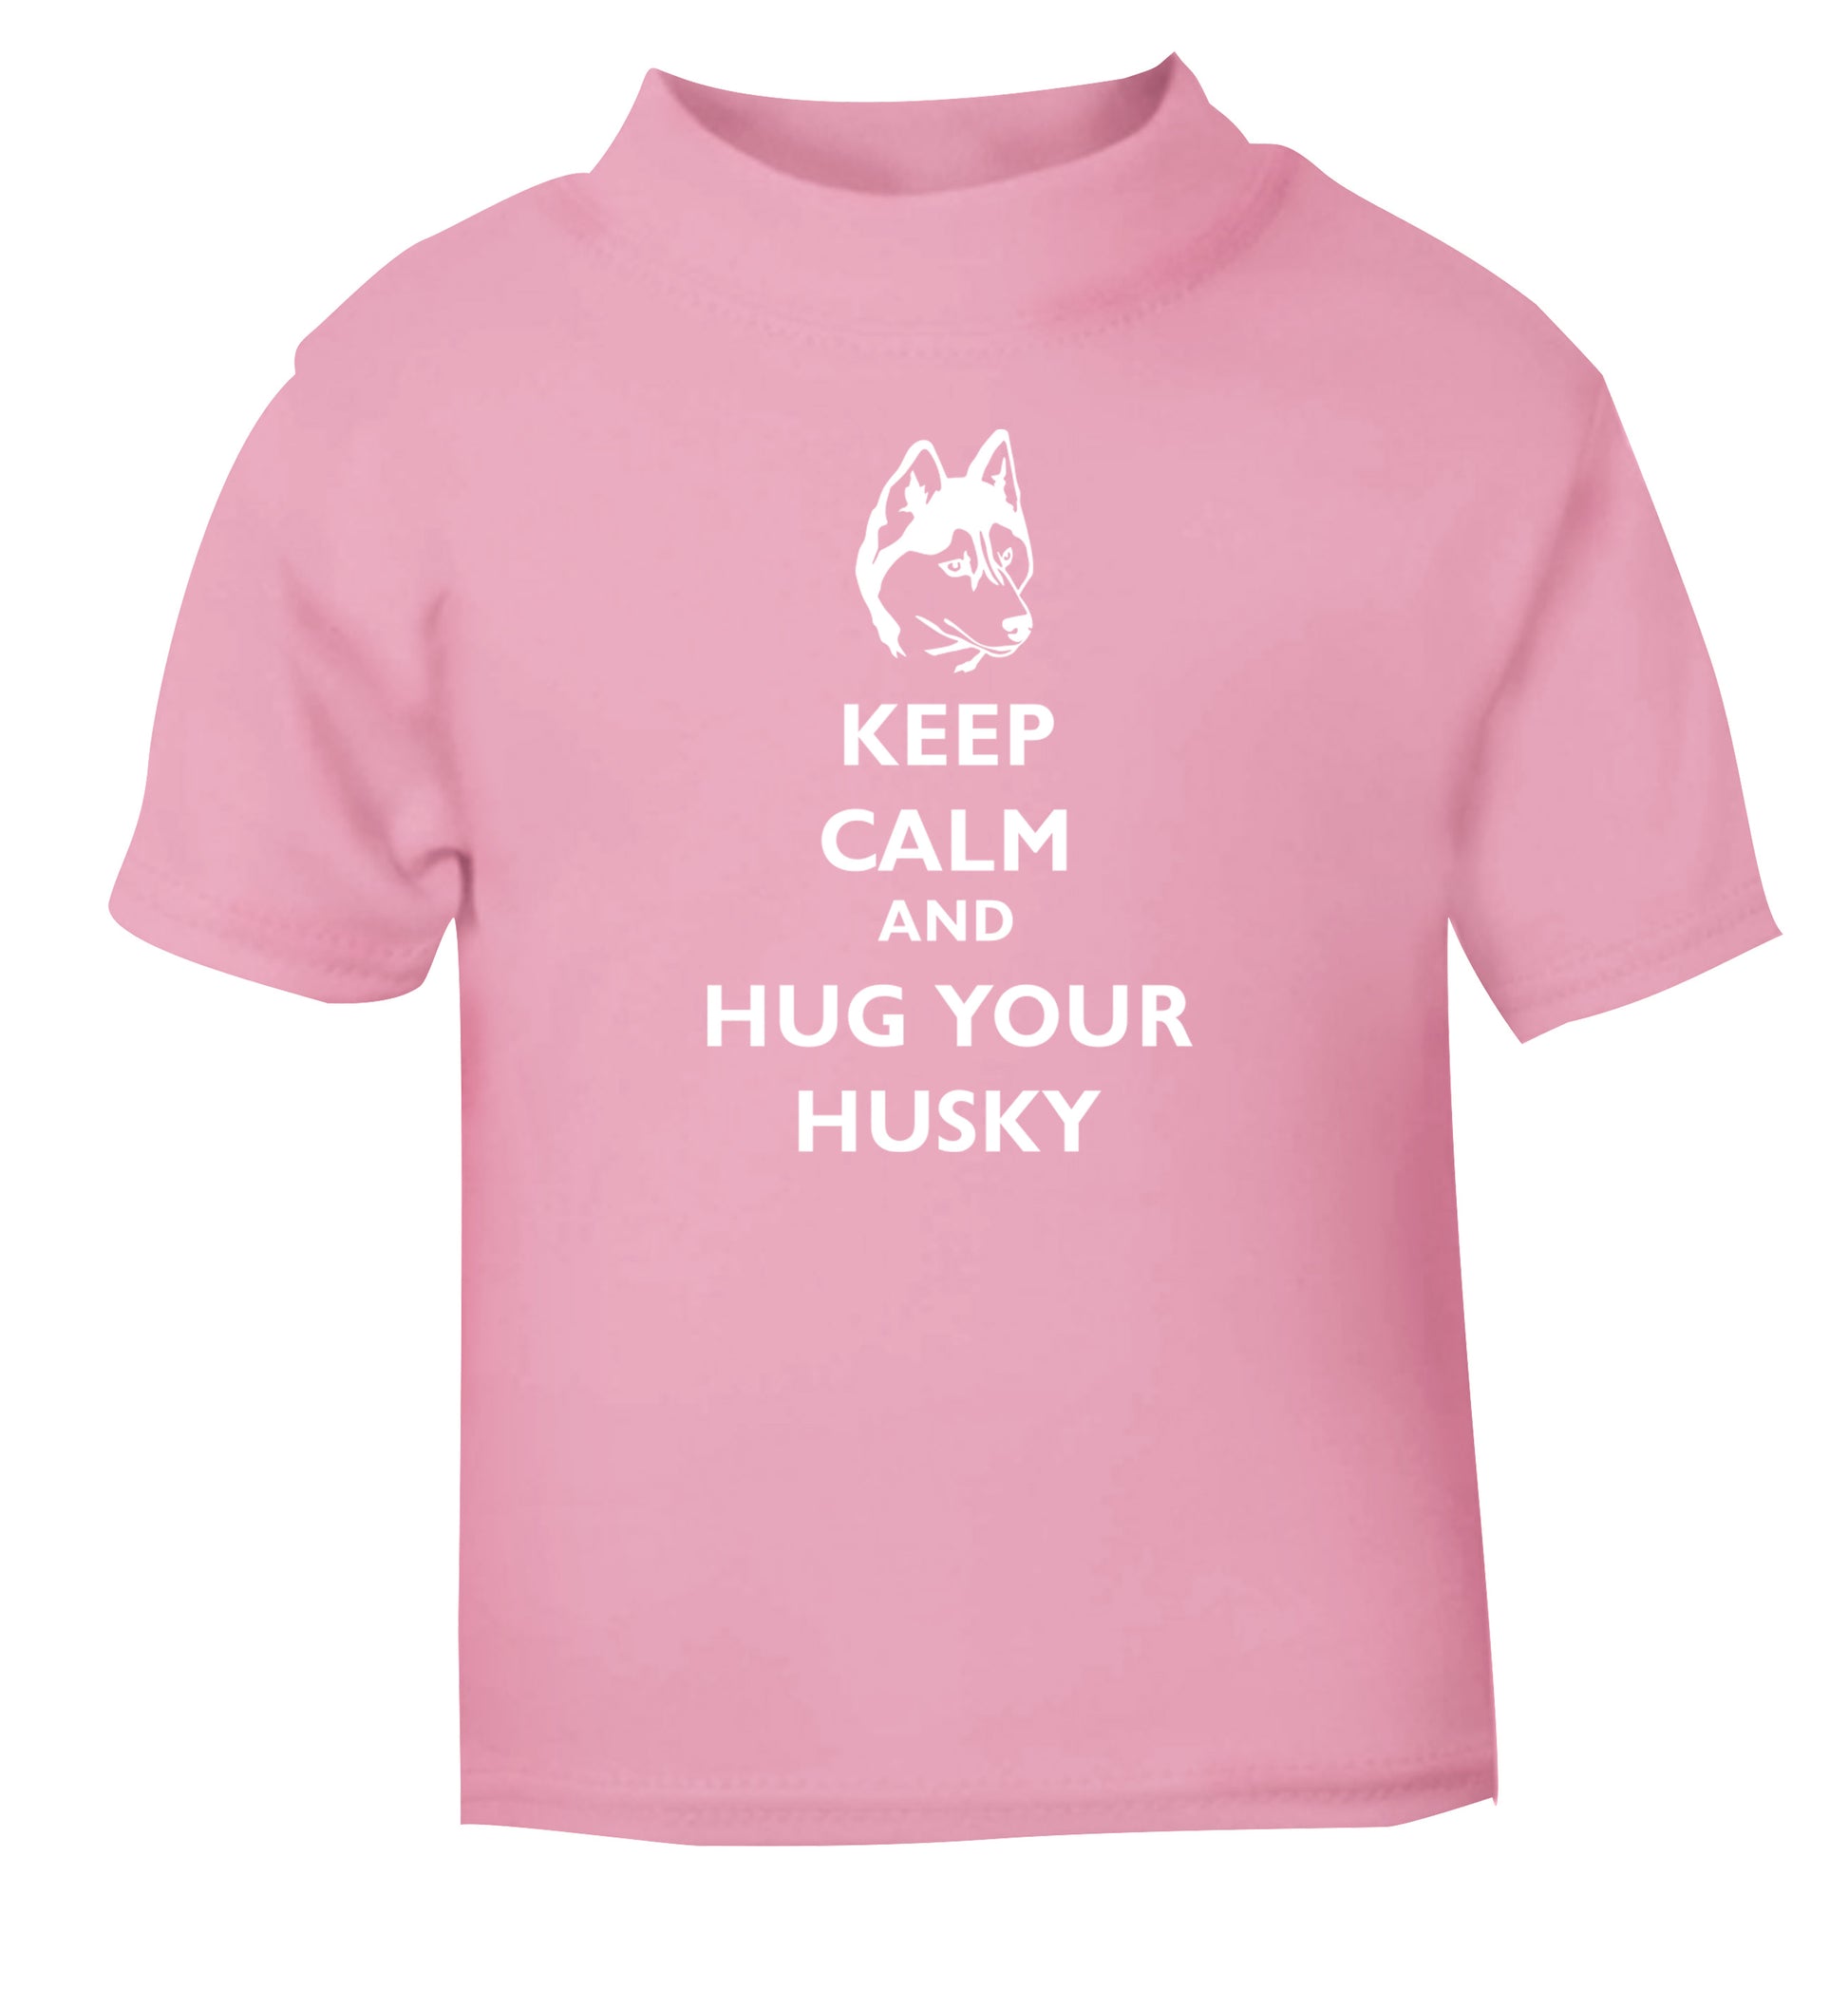 Keep calm and hug your husky light pink Baby Toddler Tshirt 2 Years